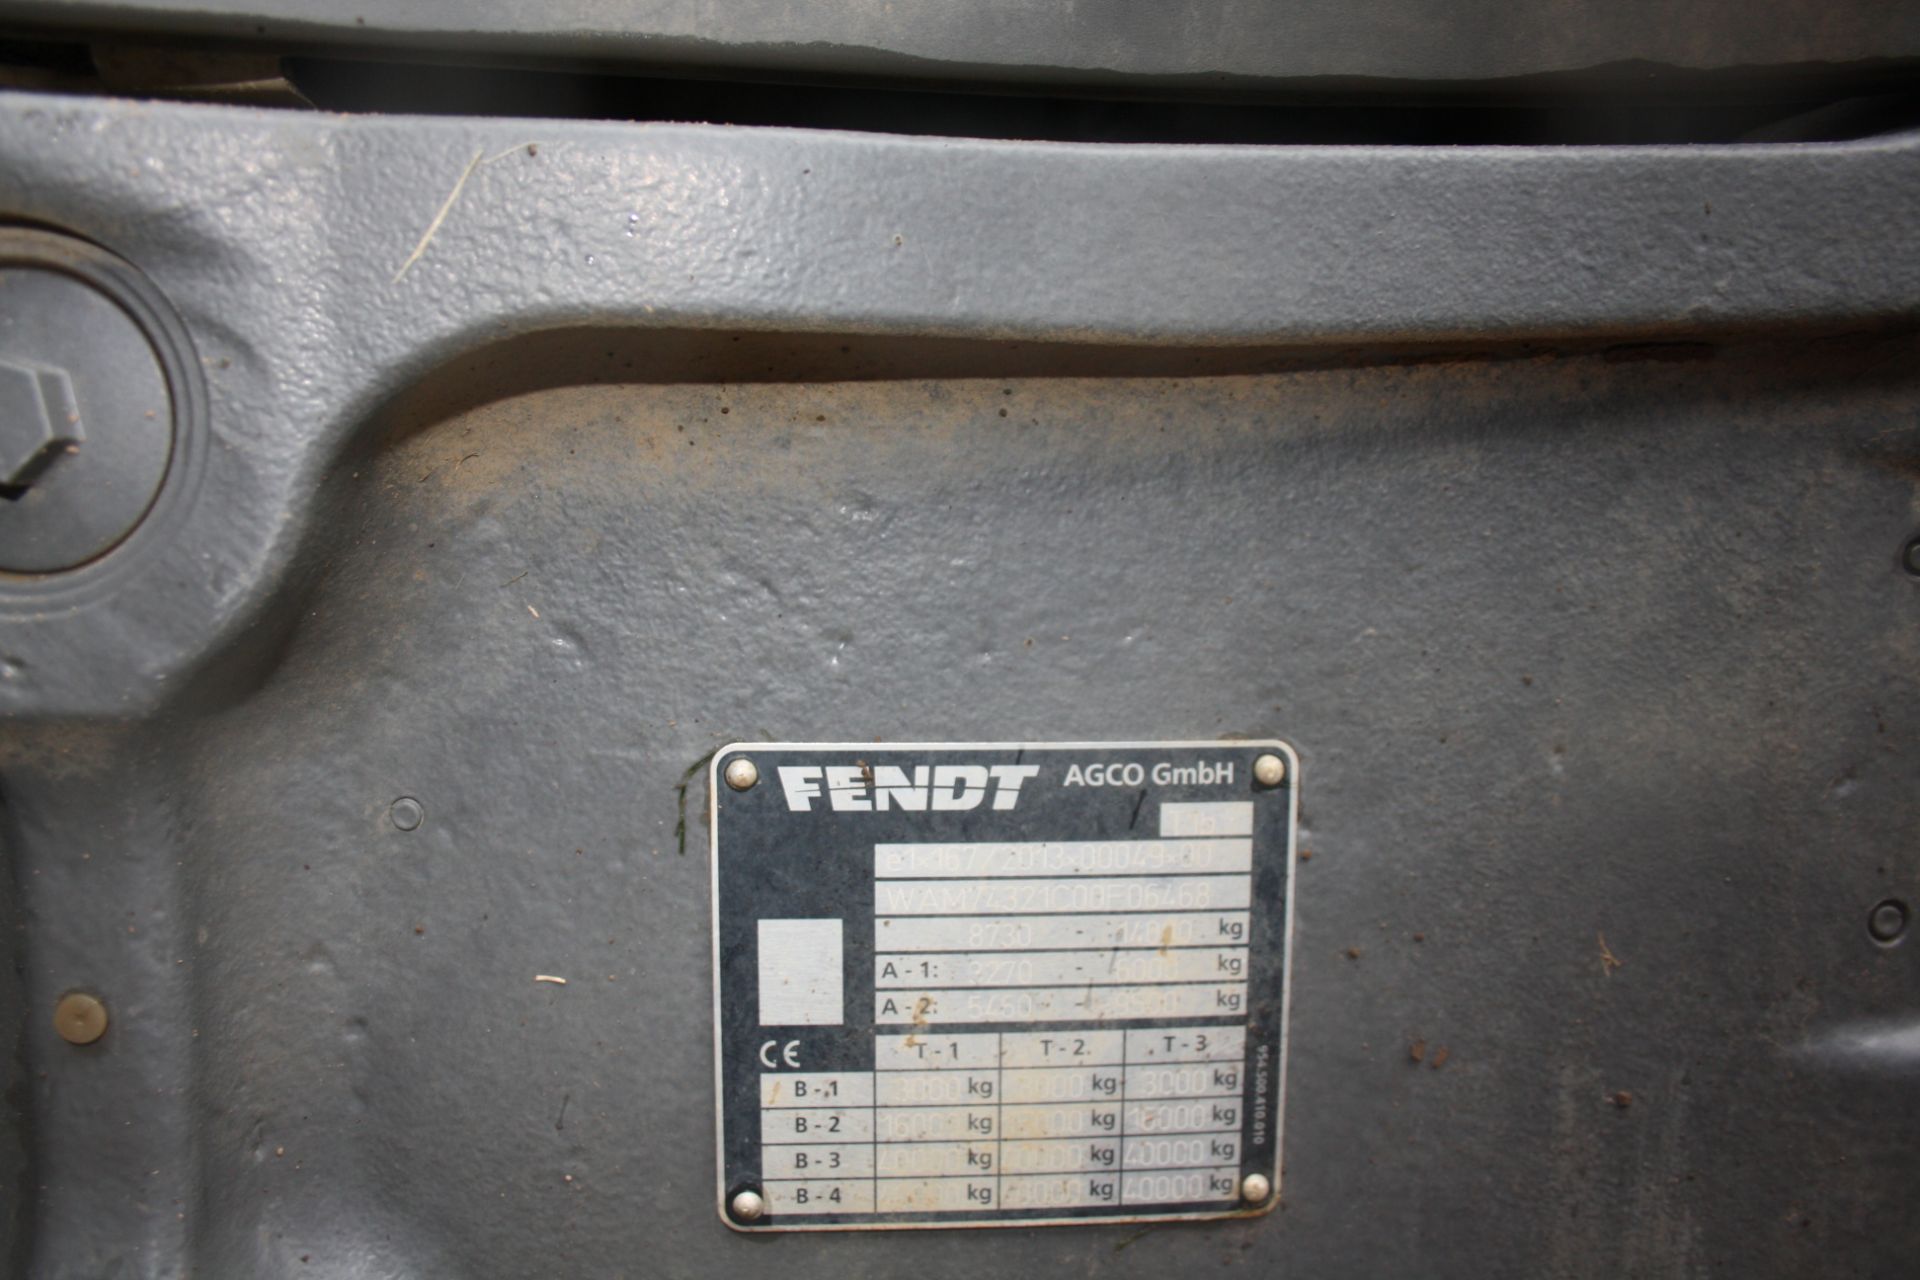 (17) Fendt 724 Vario S4 Profiplus 4WD tractor - Image 13 of 17